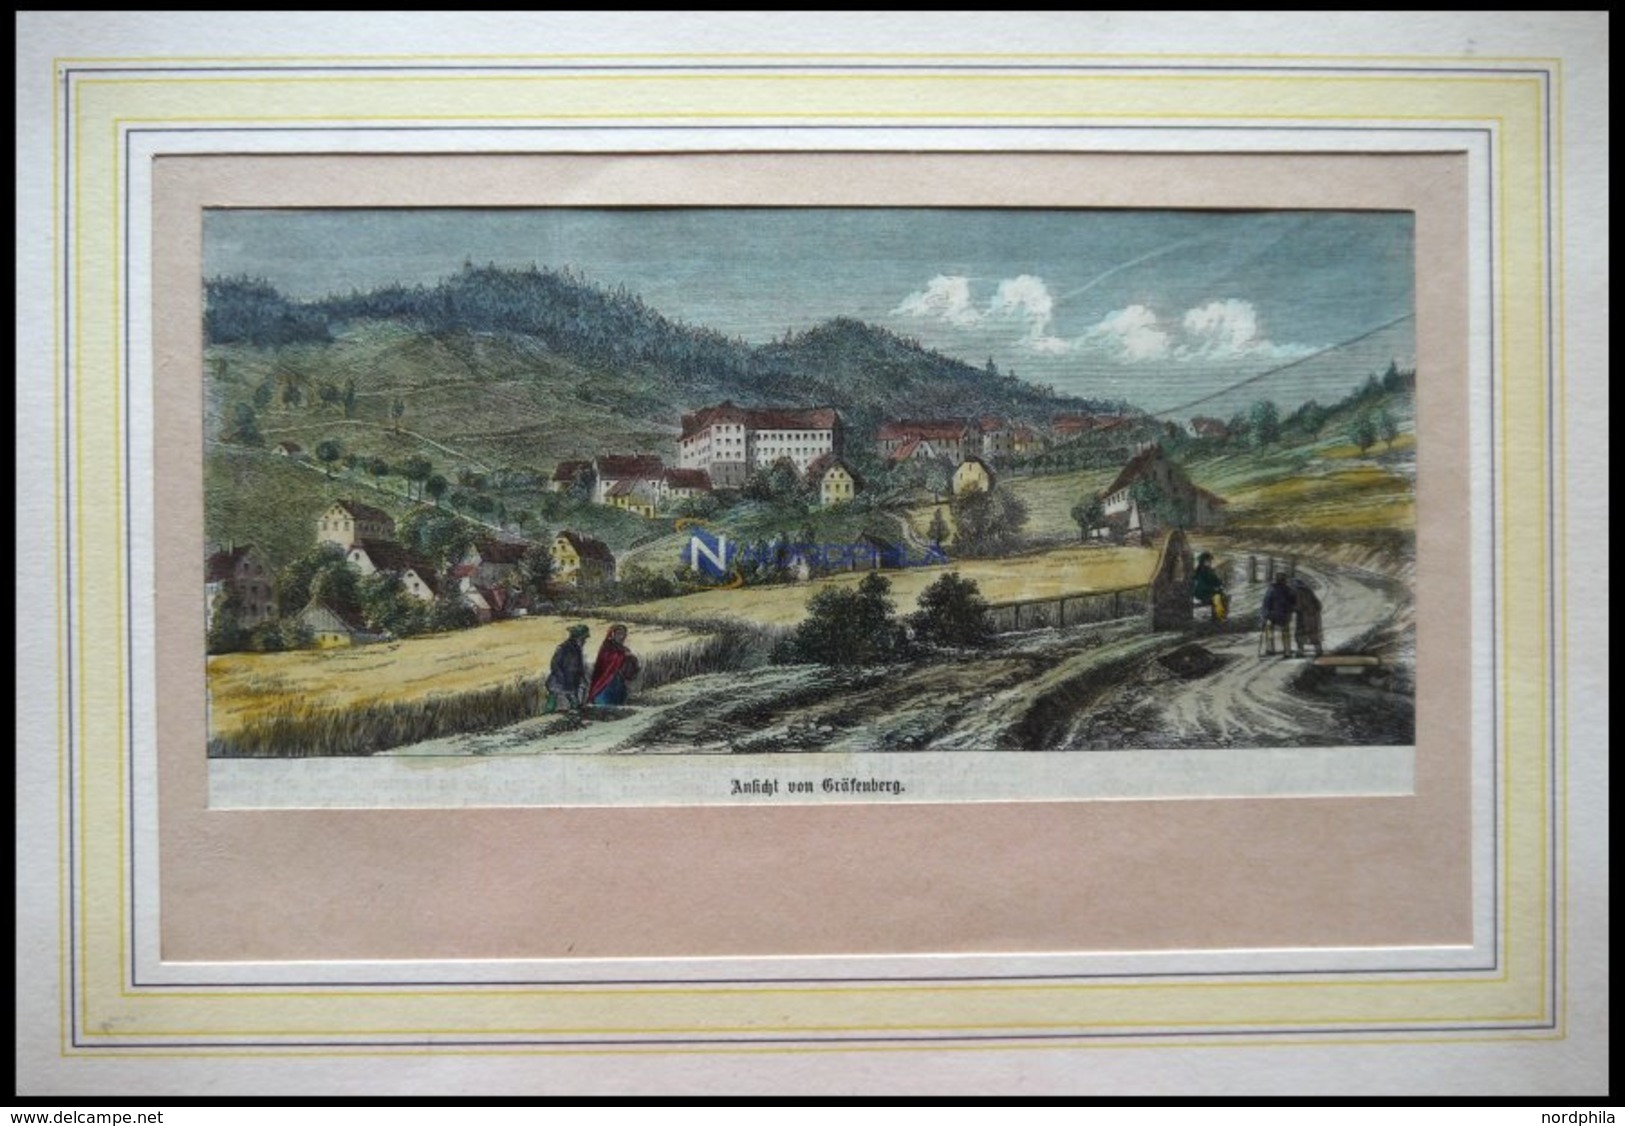 GRÄFENBERG I. SCHLESIEN, Gesamtansicht, Kolorierter Holzstich Um 1880 - Lithografieën